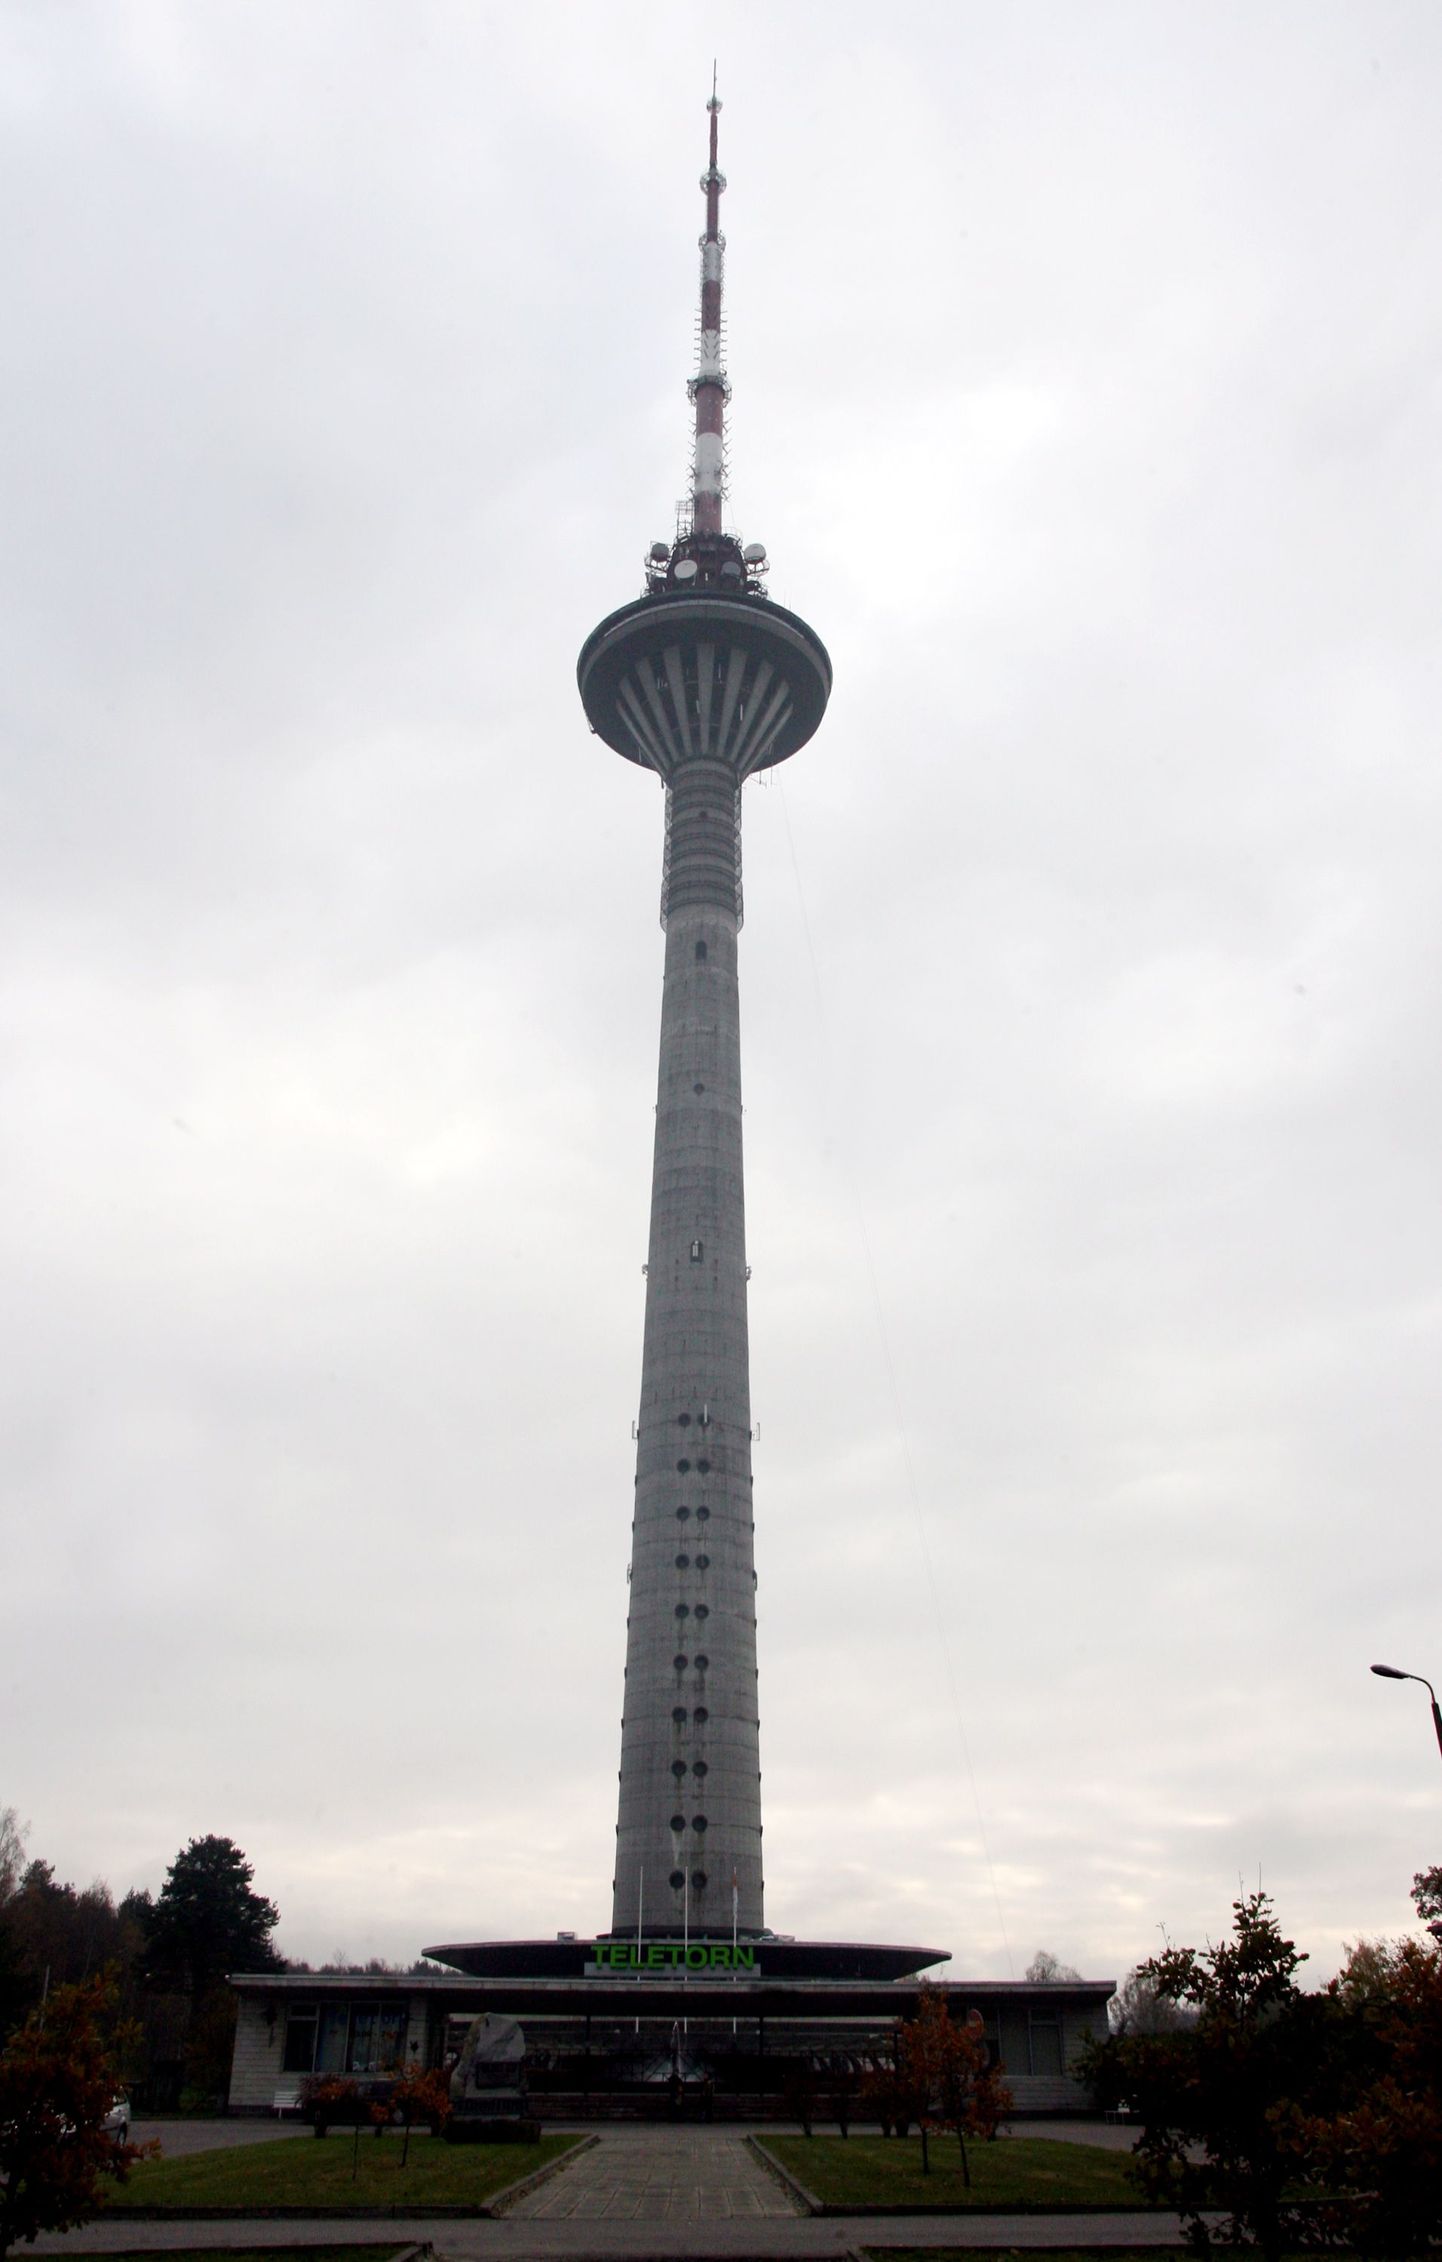 Praegu külastajatele suletud Tallinna teletorni vaateplatvorm rekonstrueeritakse